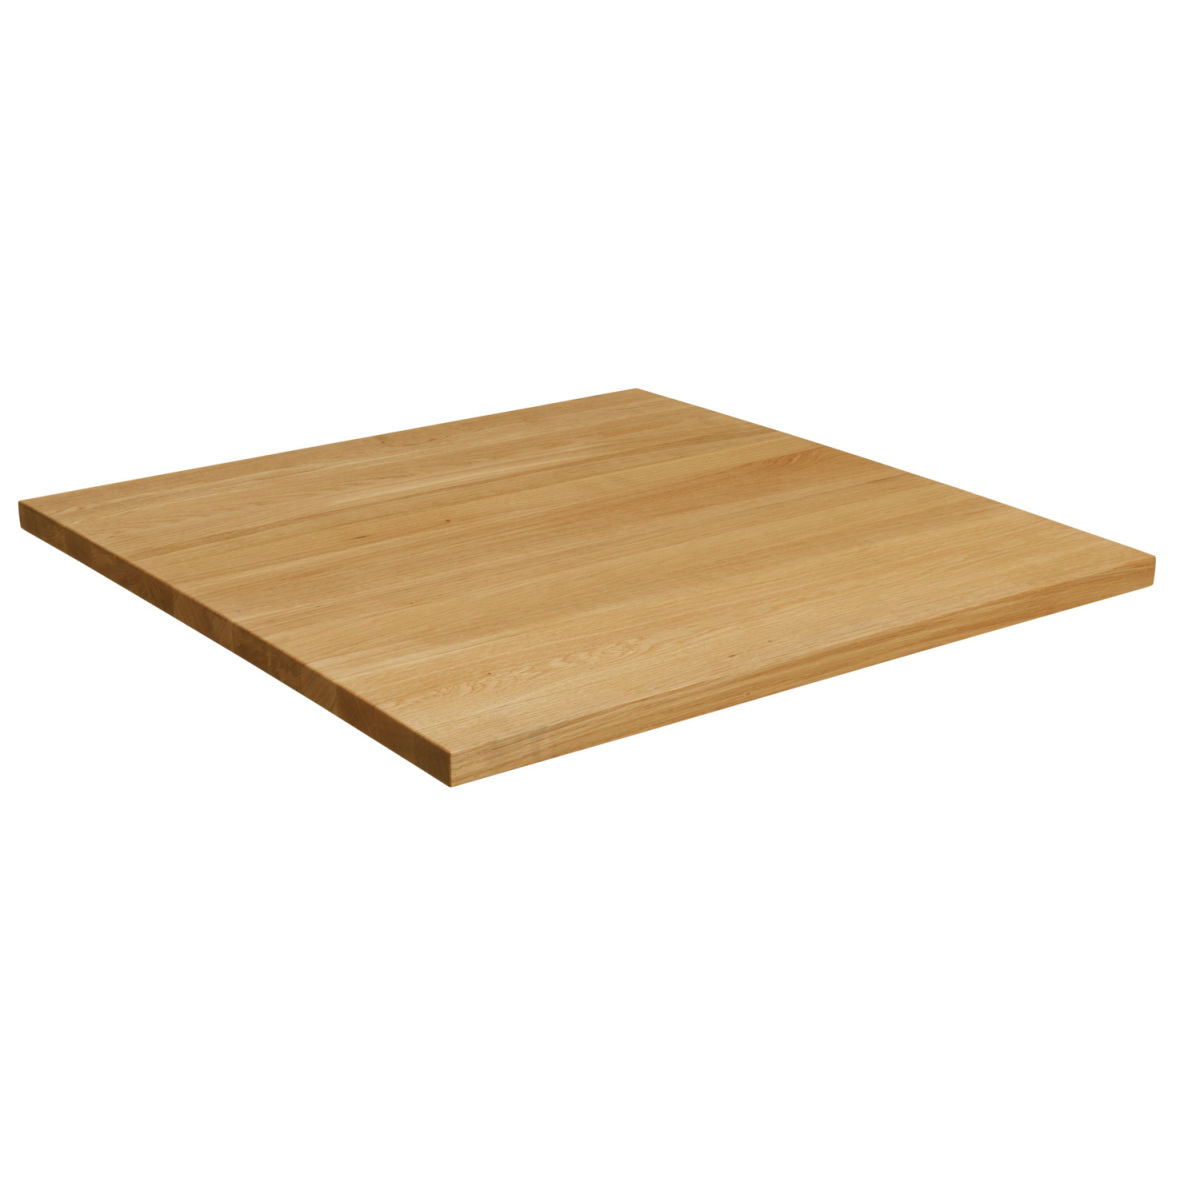 vega piano tavolo legno massello kentucky quadrato ; 80x80x3 cm (lxlxh); quercia/naturale; quadrata donna